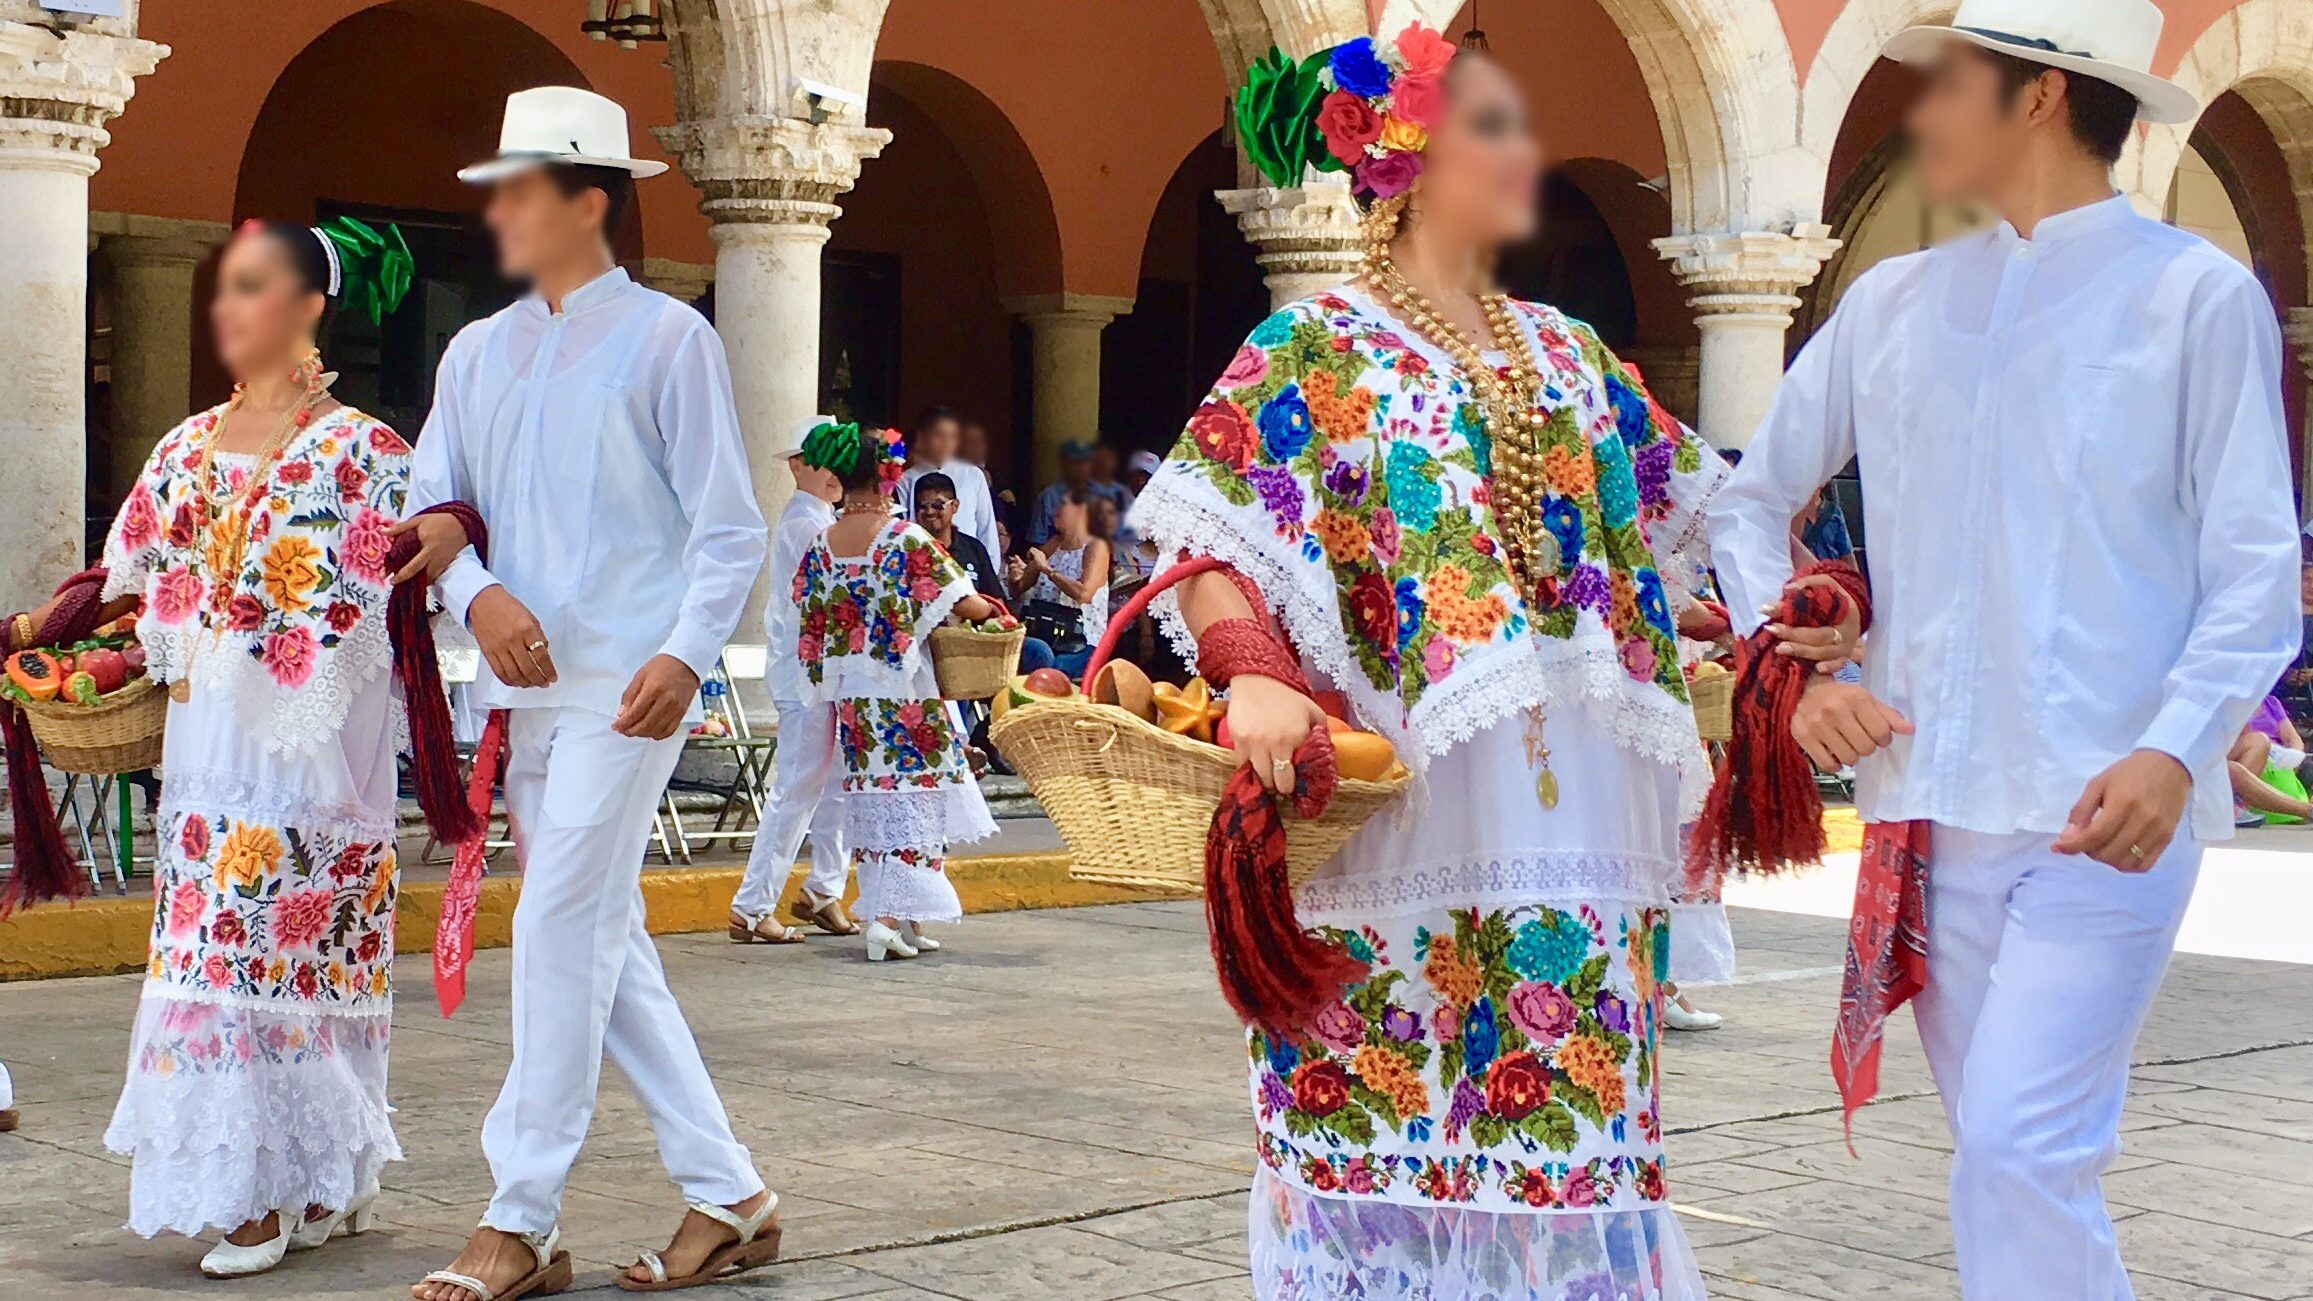 ユカタンの民族衣装 テルノを着る 2 テルノについて 旅考人 踊り人 まそん Mascara Sonrisa の野帳